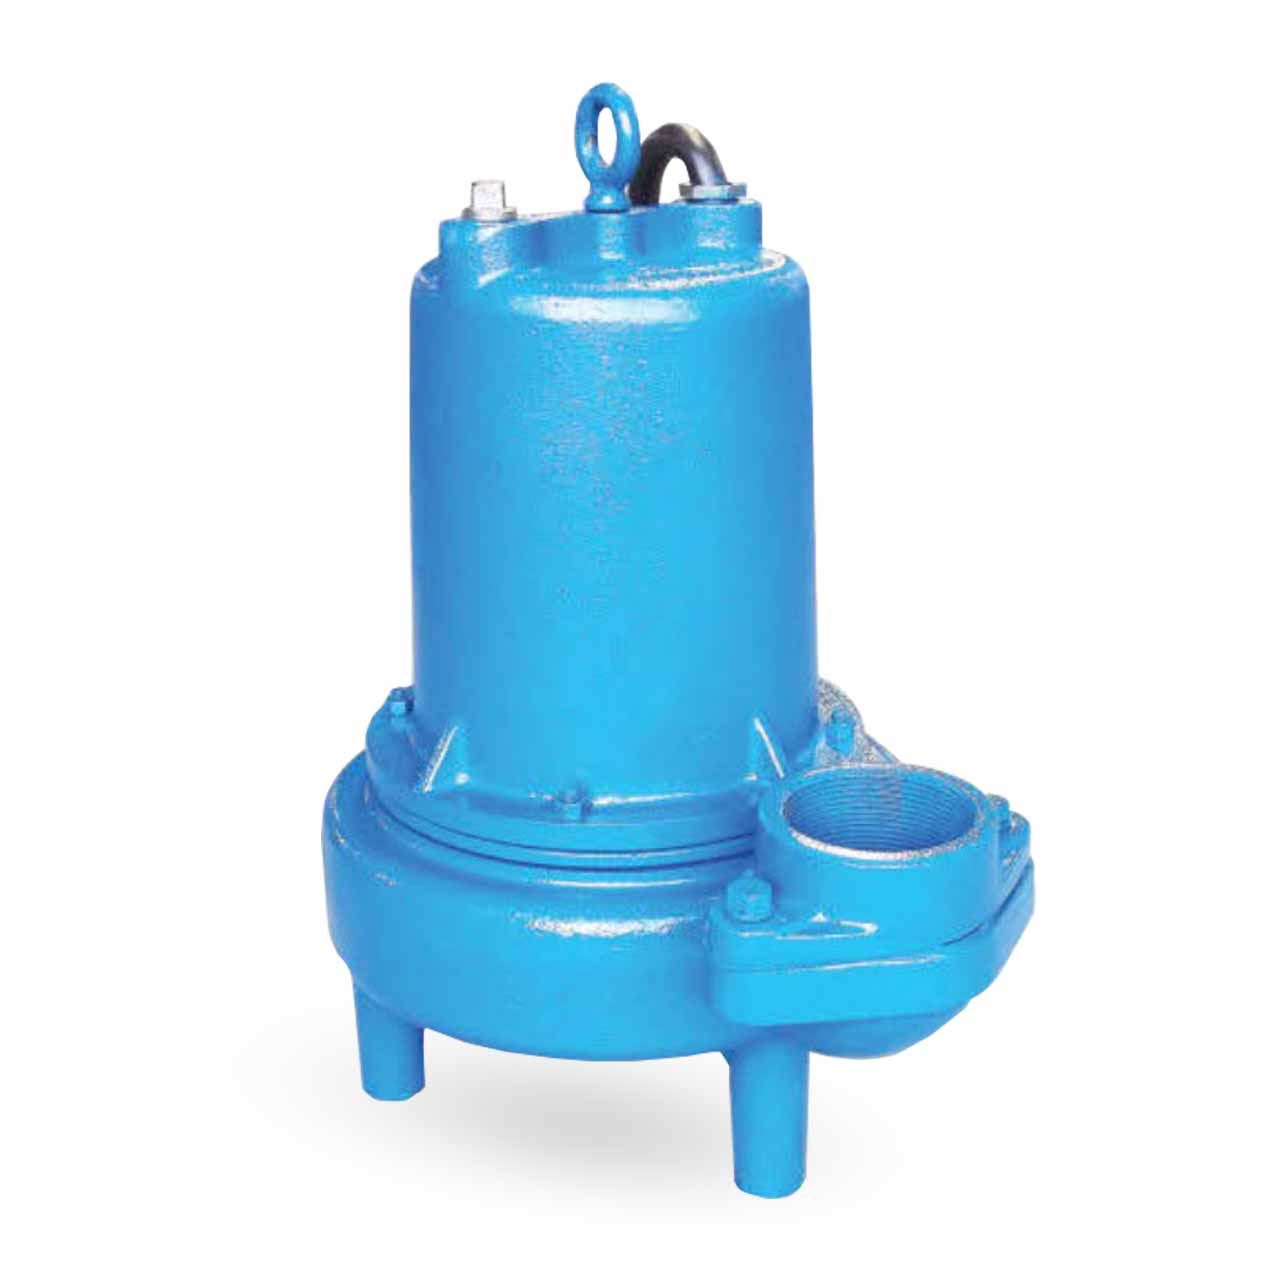 Barmesa 3BSE202SS Submersible Non-Clog Sewage Pump 2.0 HP 200/230V 1PH 25'  Cord Manual